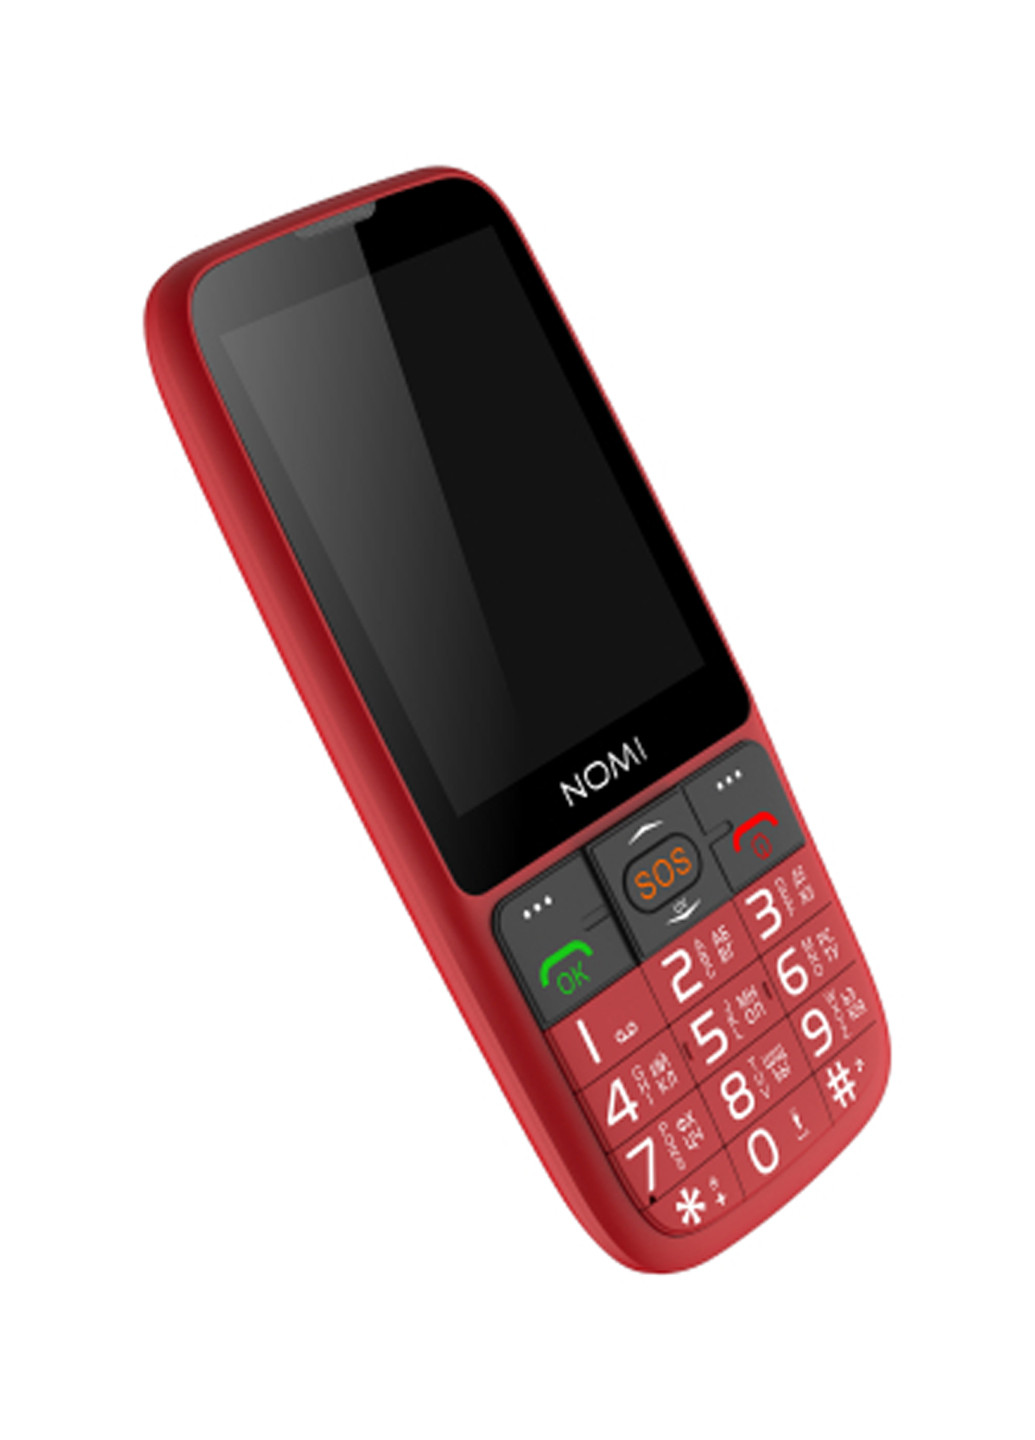 Мобильный телефон Nomi i281+ red (134344433)